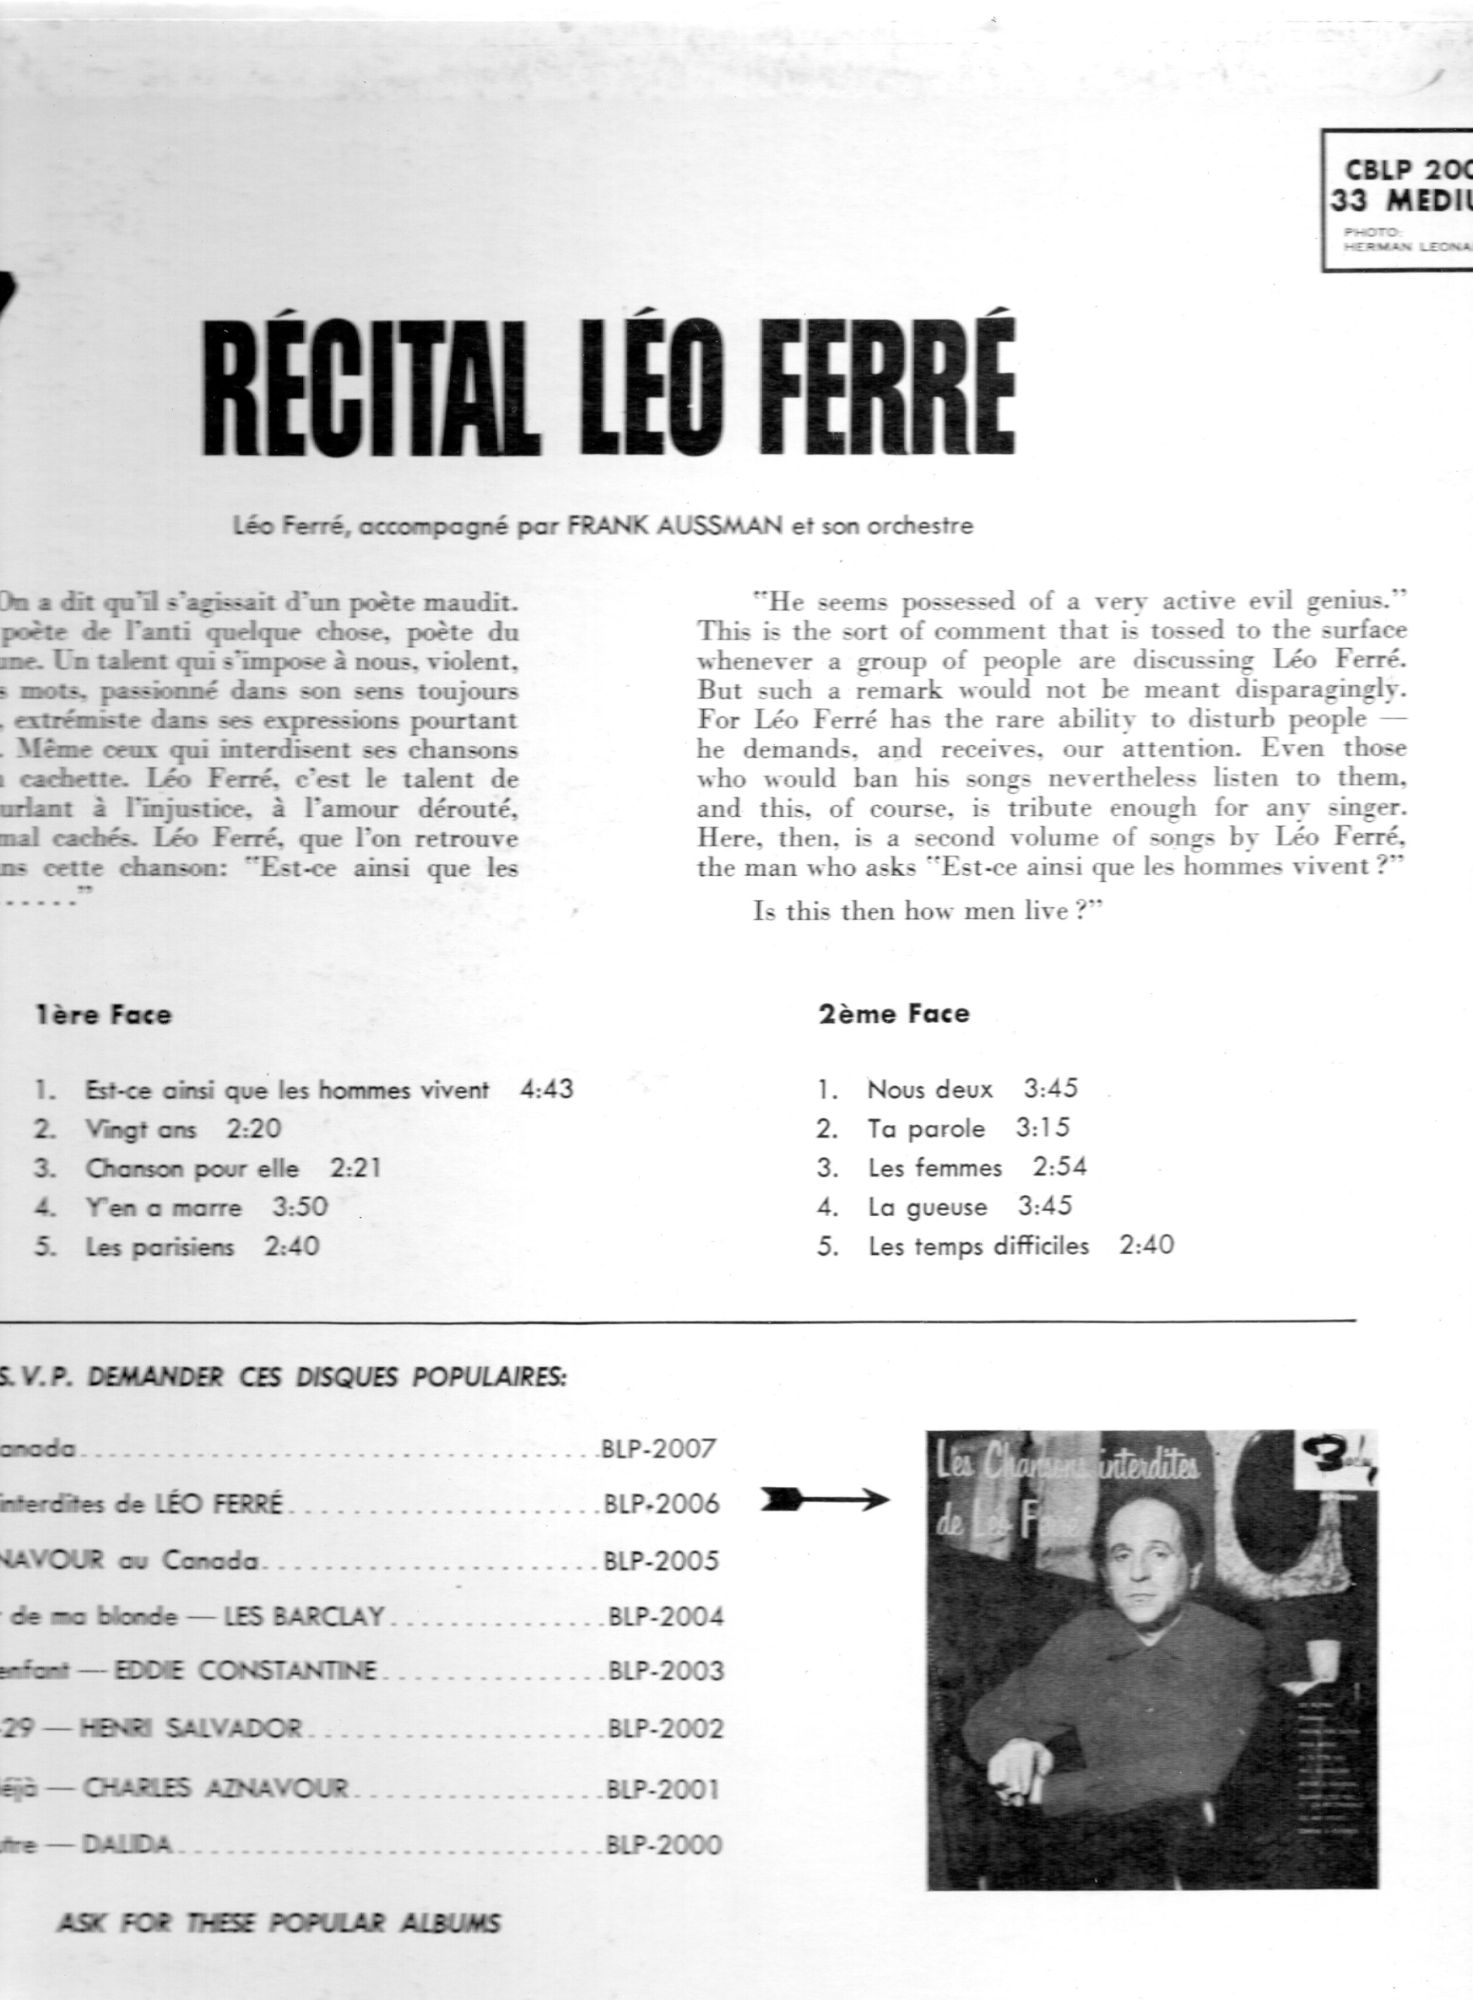  Récital Léo Ferré - Pressage canadien, Barclay CBLP 2808